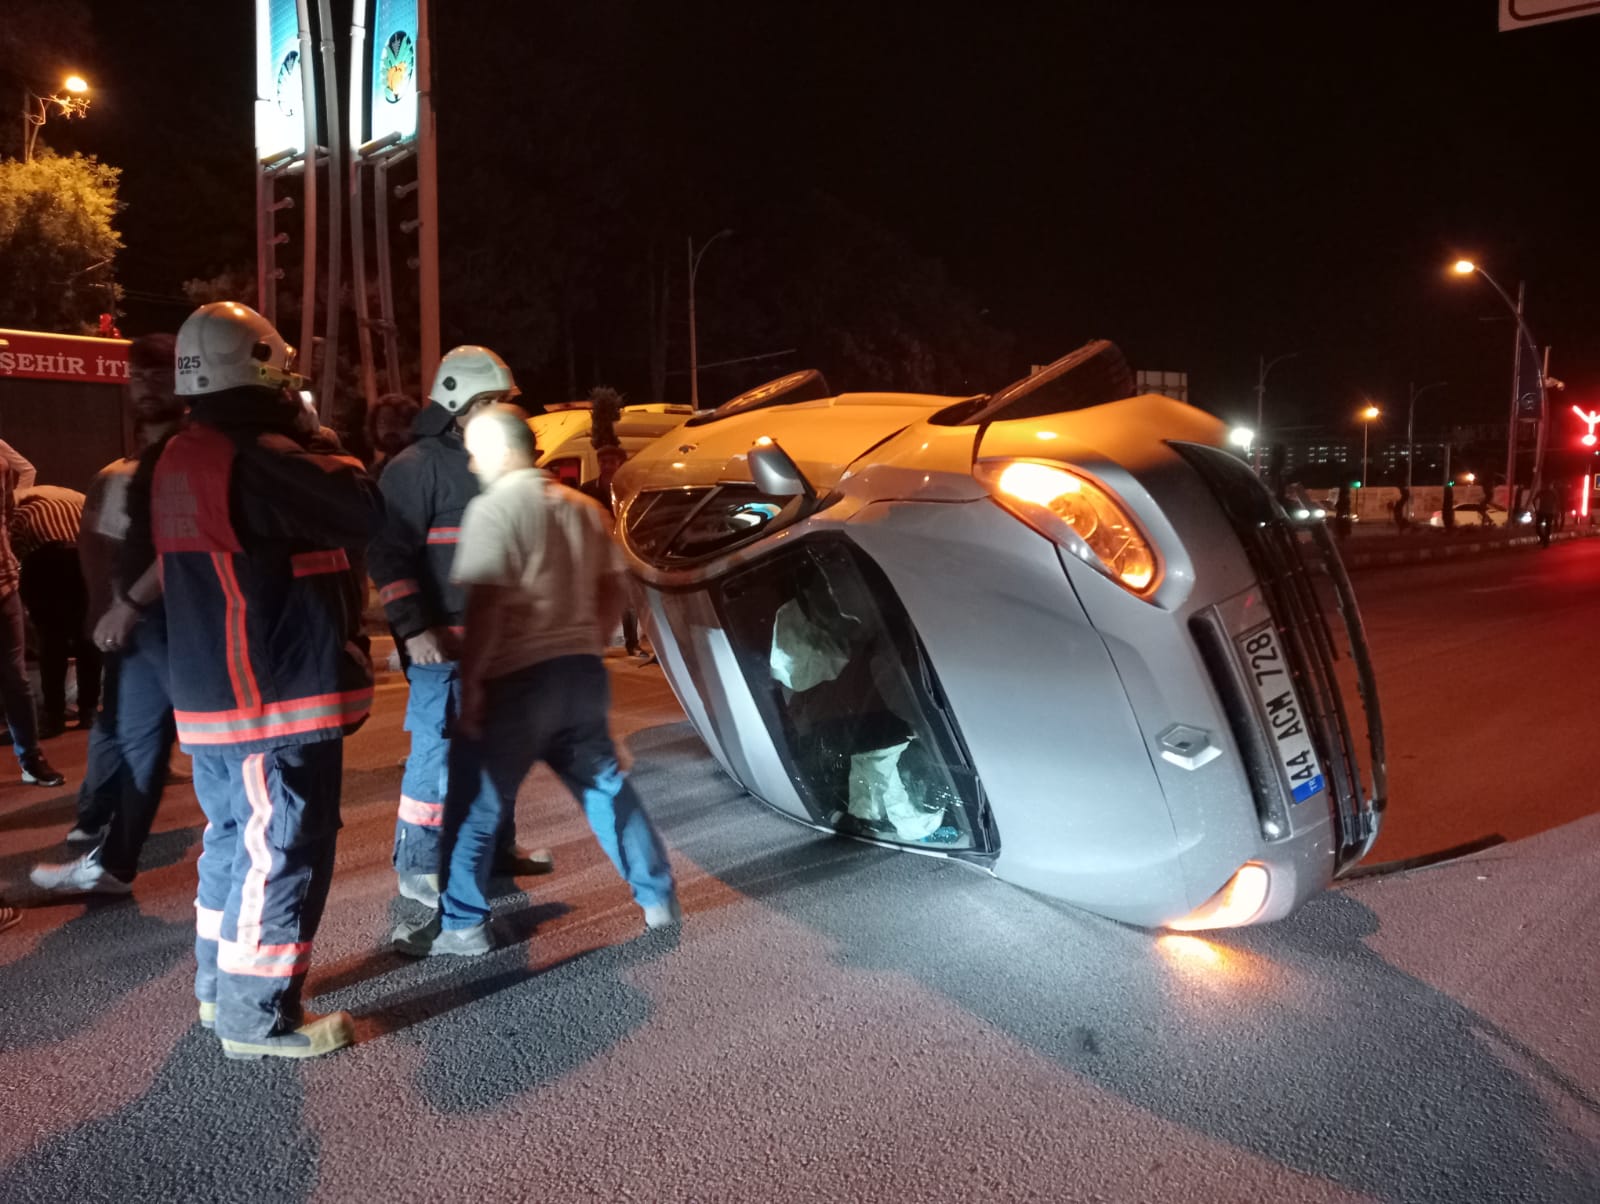 Malatya il merkezinde bir otomobilin kavşakta takla atması sonucu meydana gelen kazada 2 kişi yaralandı.